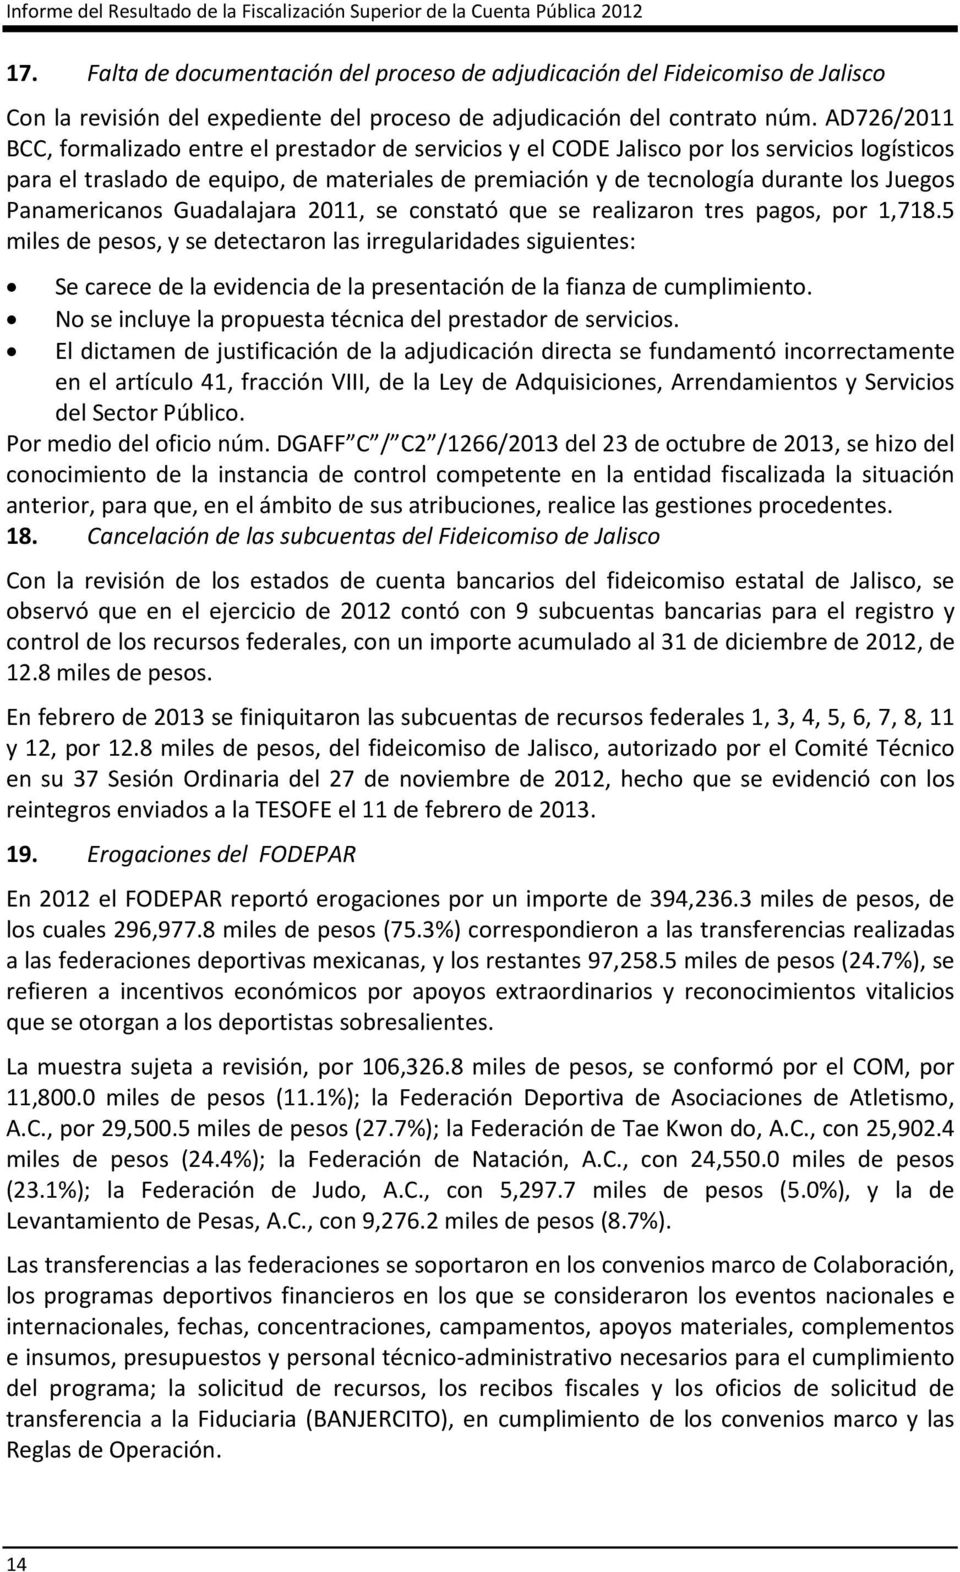 AD726/2011 BCC, formalizado entre el prestador de servicios y el CODE Jalisco por los servicios logísticos para el traslado de equipo, de materiales de premiación y de tecnología durante los Juegos